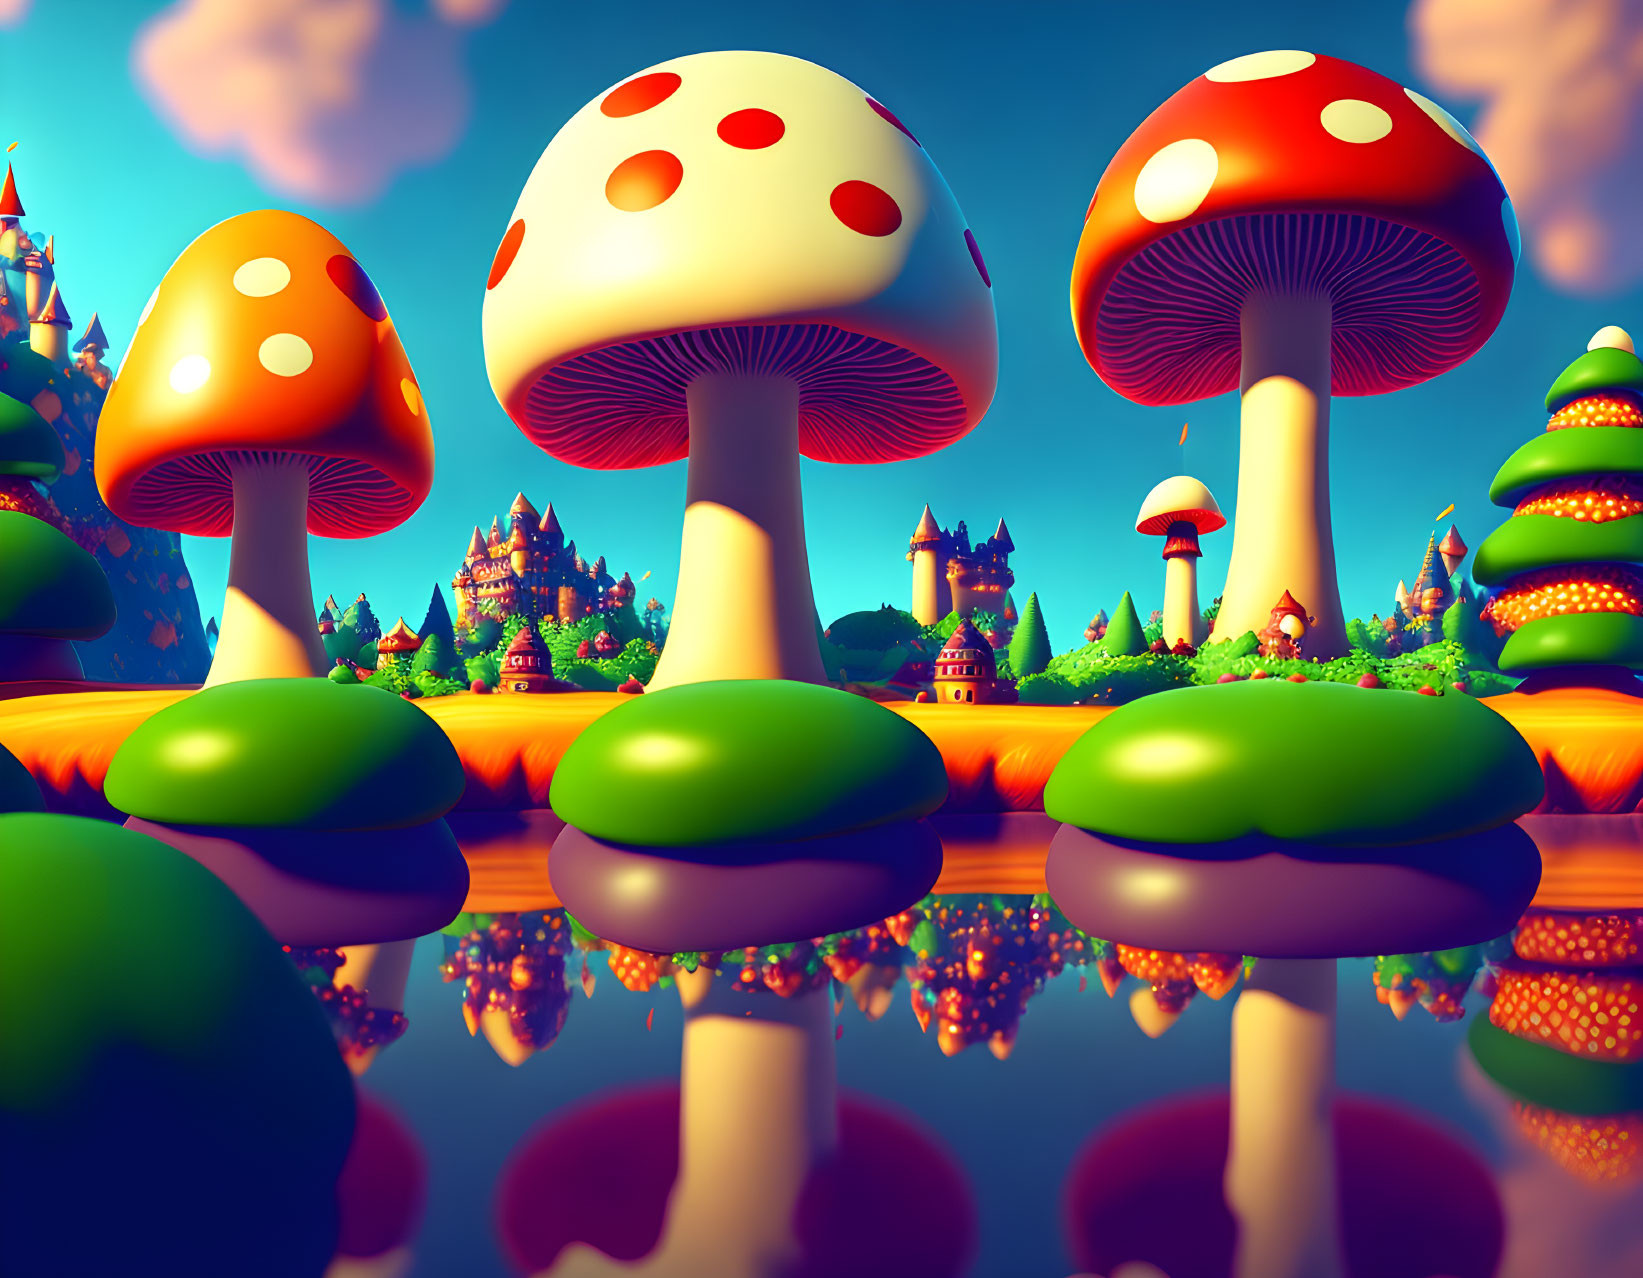 The mushroom kingdom